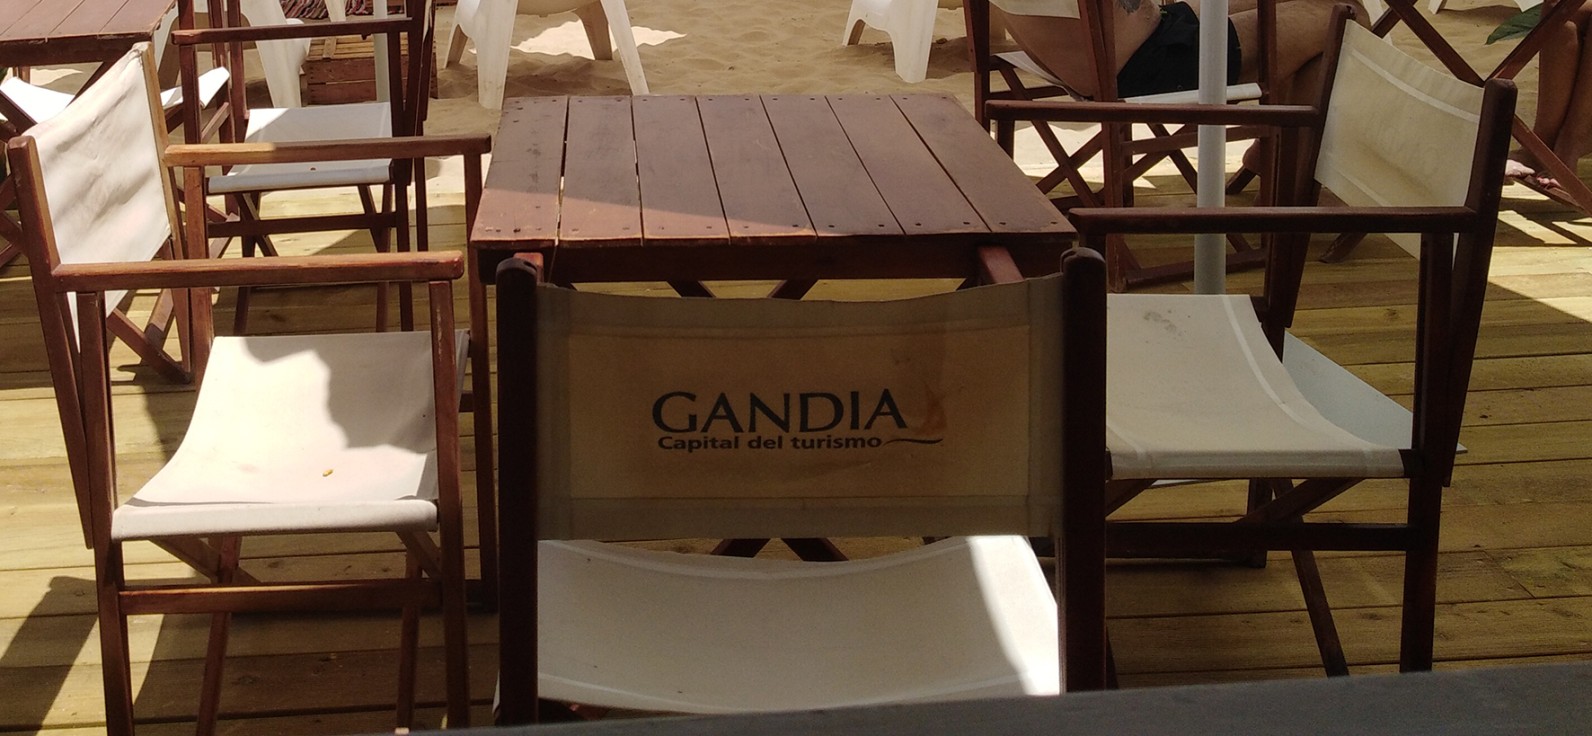 El dueño de un chiringuito de la playa de Gandia se enfrenta a dos años de cárcel por abuso sexual a una empleada